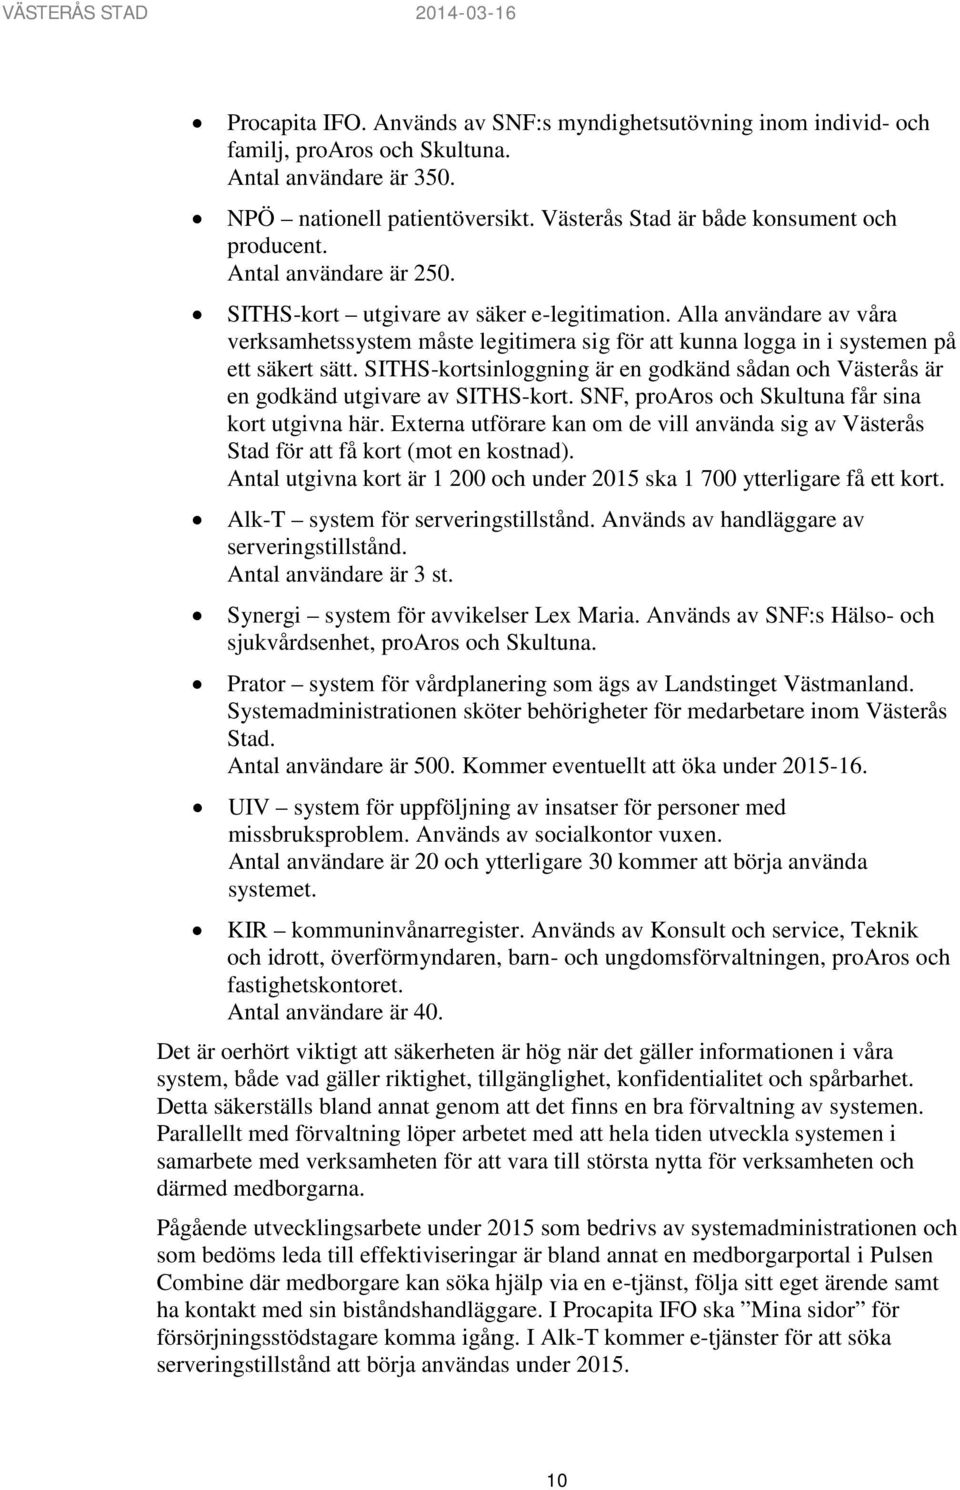 SITHS-kortsinloggning är en godkänd sådan och Västerås är en godkänd utgivare av SITHS-kort. SNF, proaros och Skultuna får sina kort utgivna här.